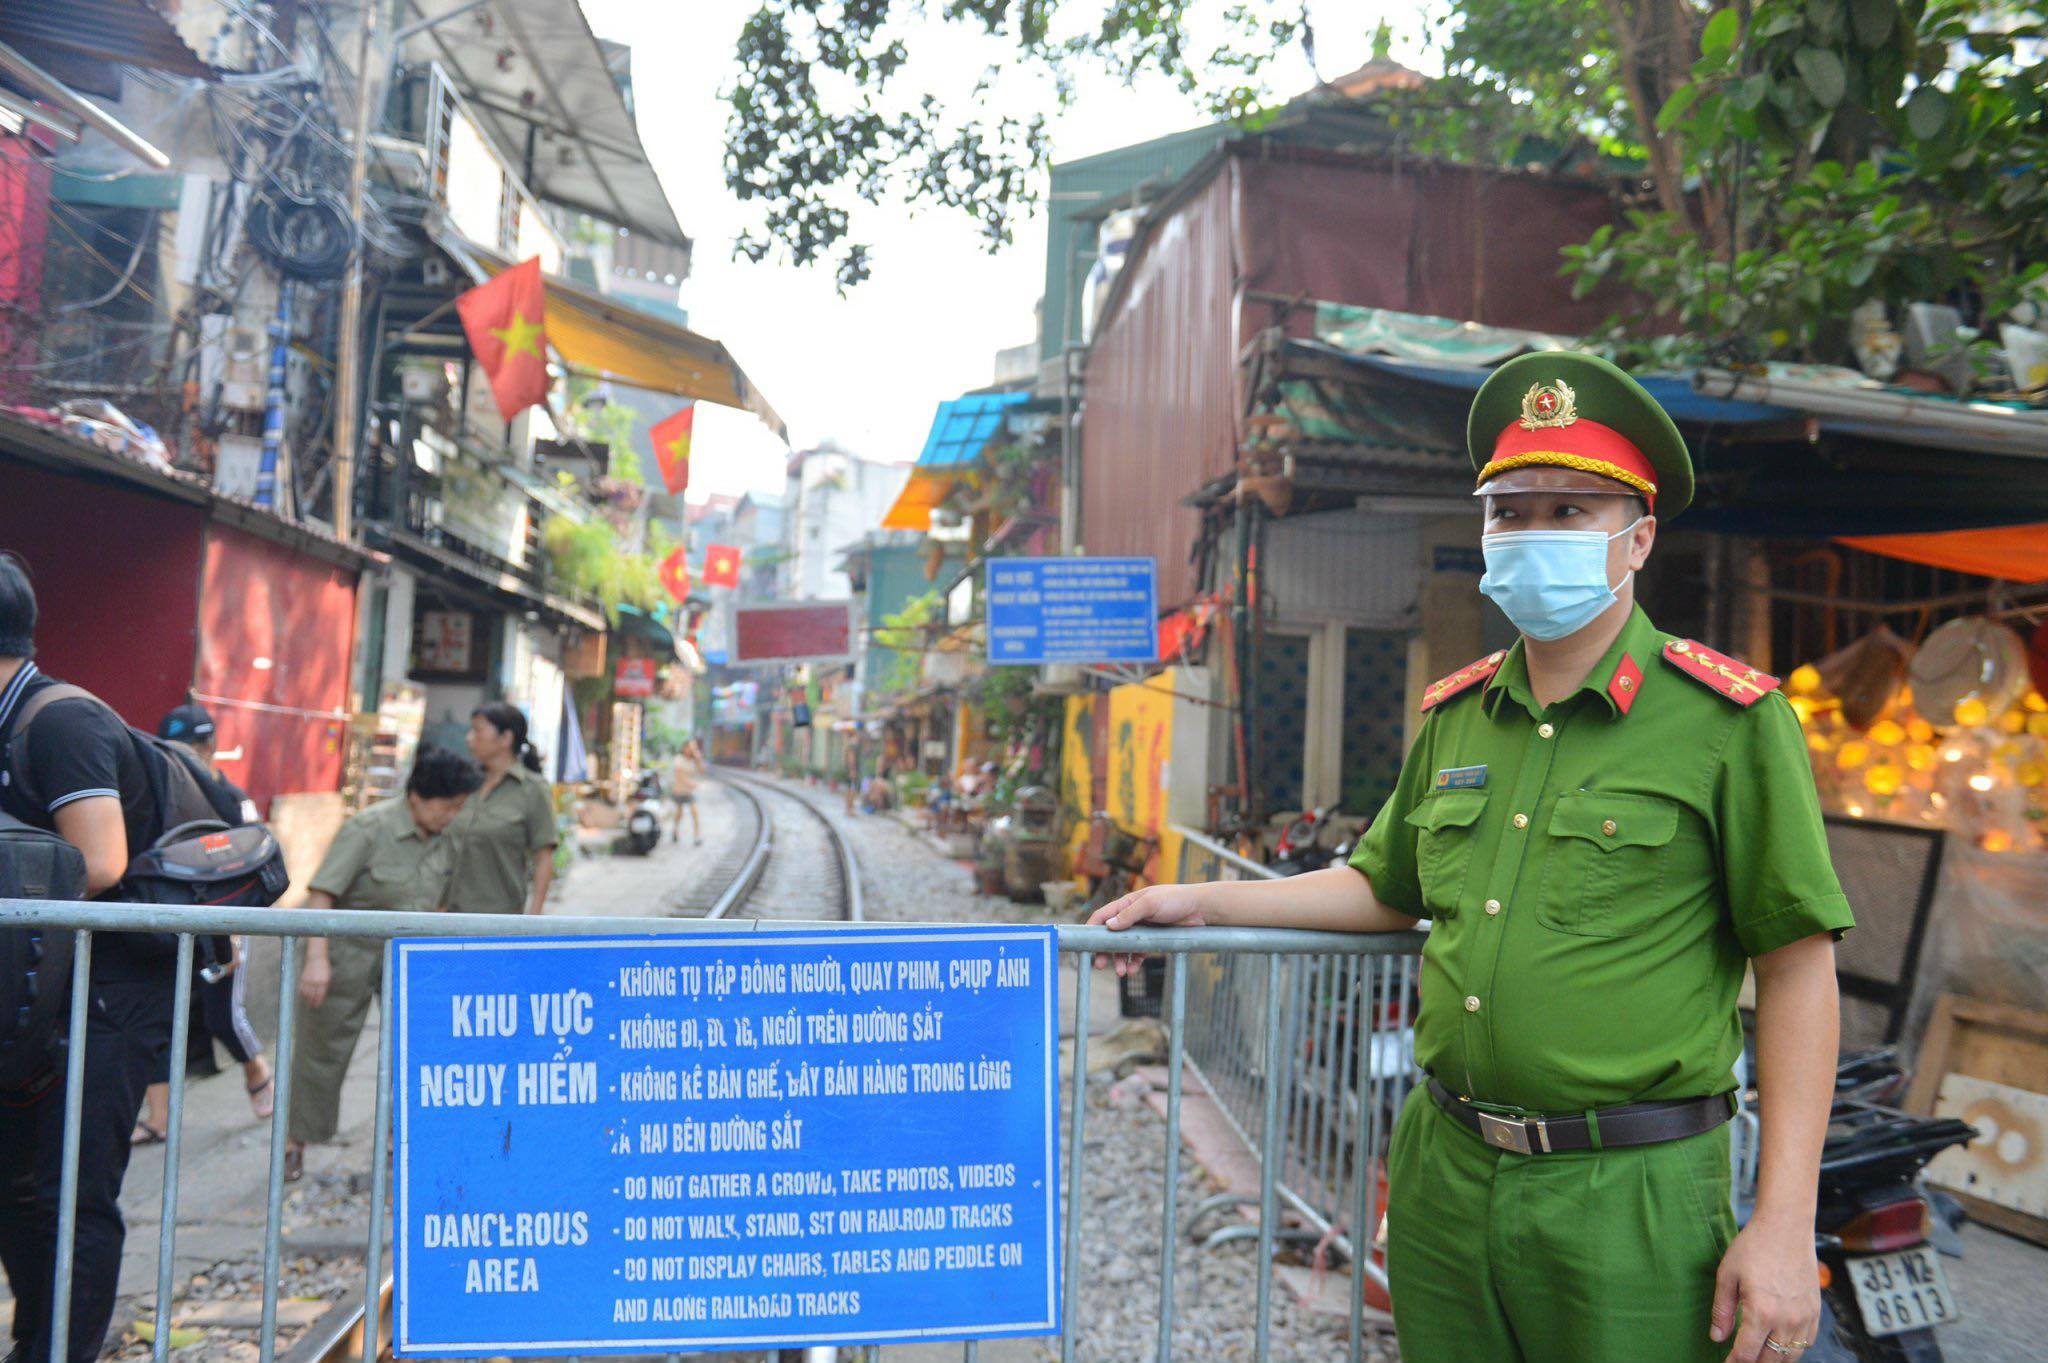 Sáng 15/9, lực lượng chức năng quận Hoàn Kiếm (Hà Nội) tổ chức ra quân, dựng hàng rào barie, ngăn người dân và du khách vào bên trong phố cà phê đường tàu.